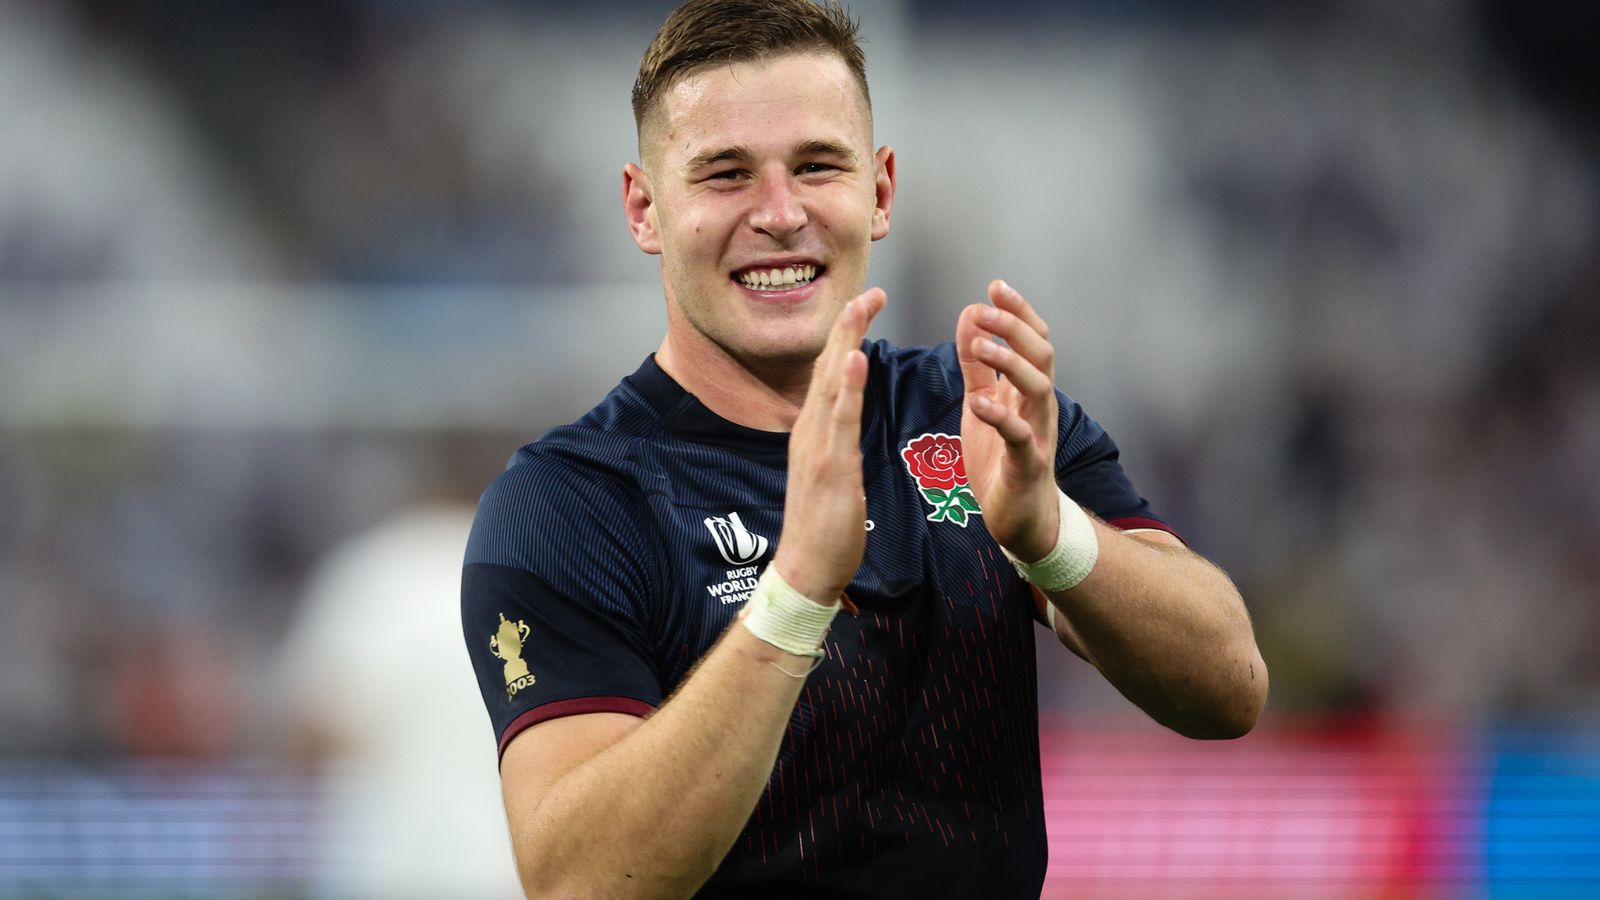 Coupe du monde de rugby : l’Angleterre inspirée par la « fusée » verbale de Kevin Sinfield alors qu’elle commence le tournoi avec une victoire |  Actualités du rugby à XV